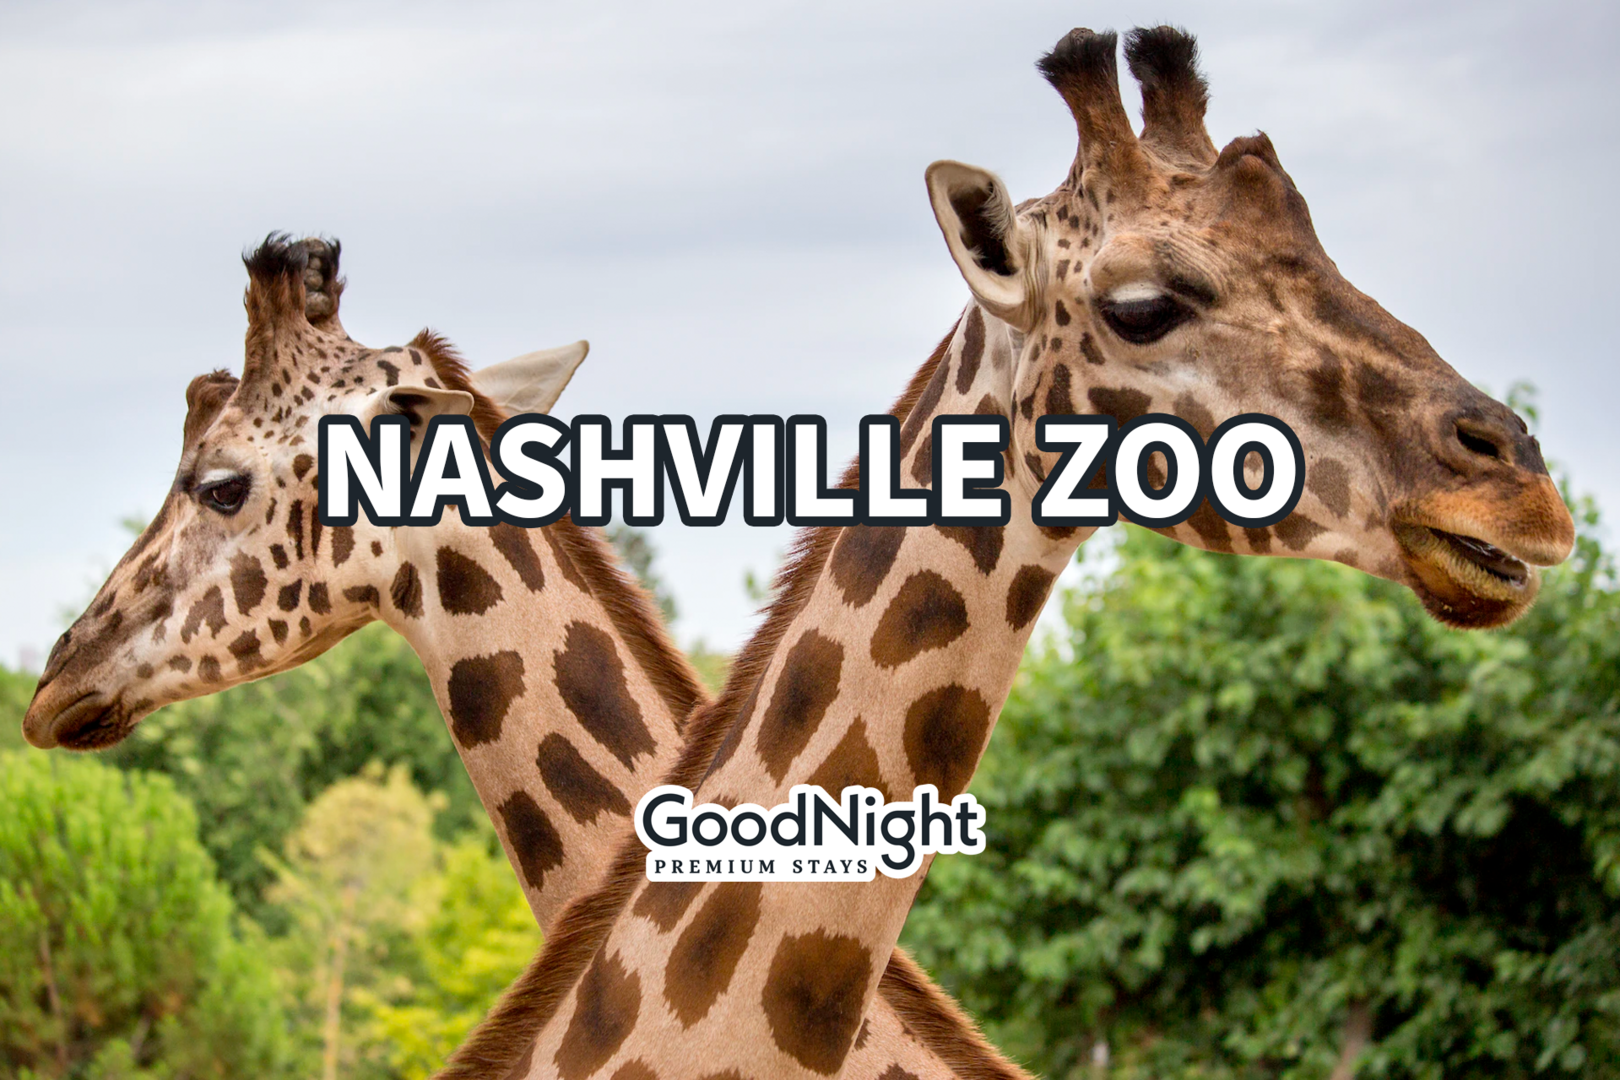 17 mins: Nashville Zoo